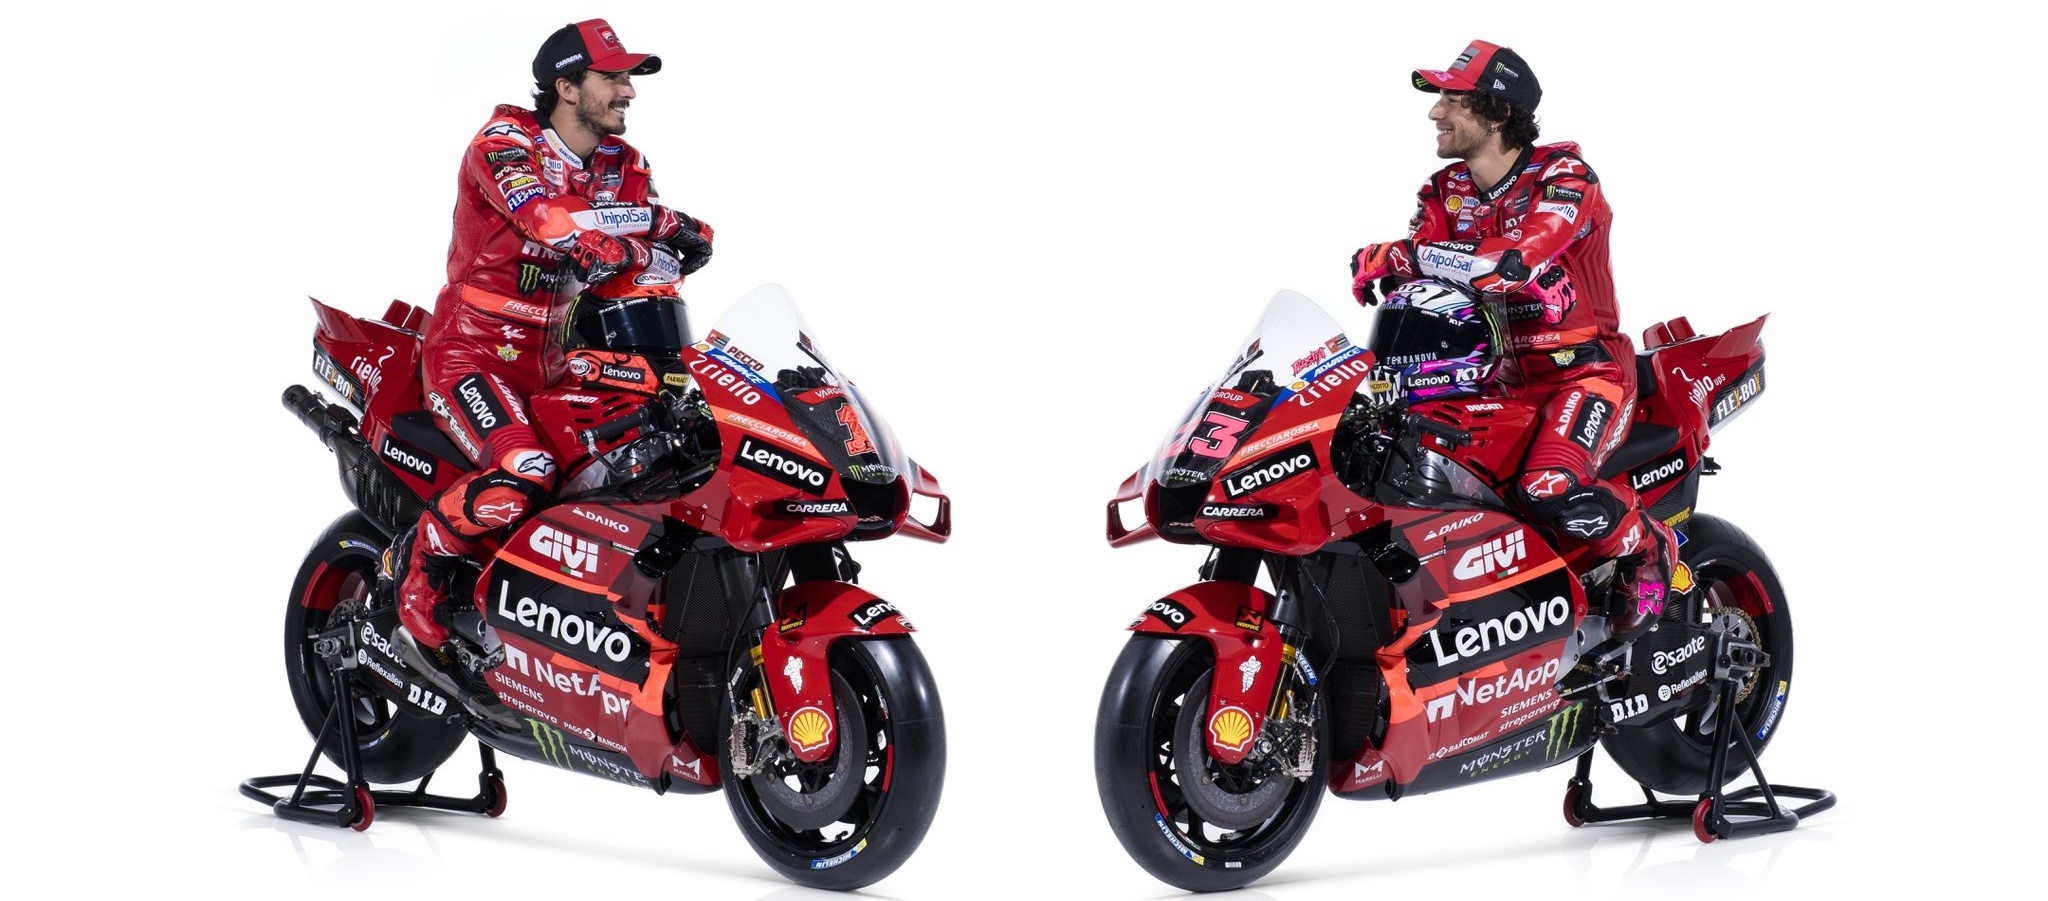 Ducati Umumkan Motor Baru, Francesco Bagnaia Gunakan Nomor Satu